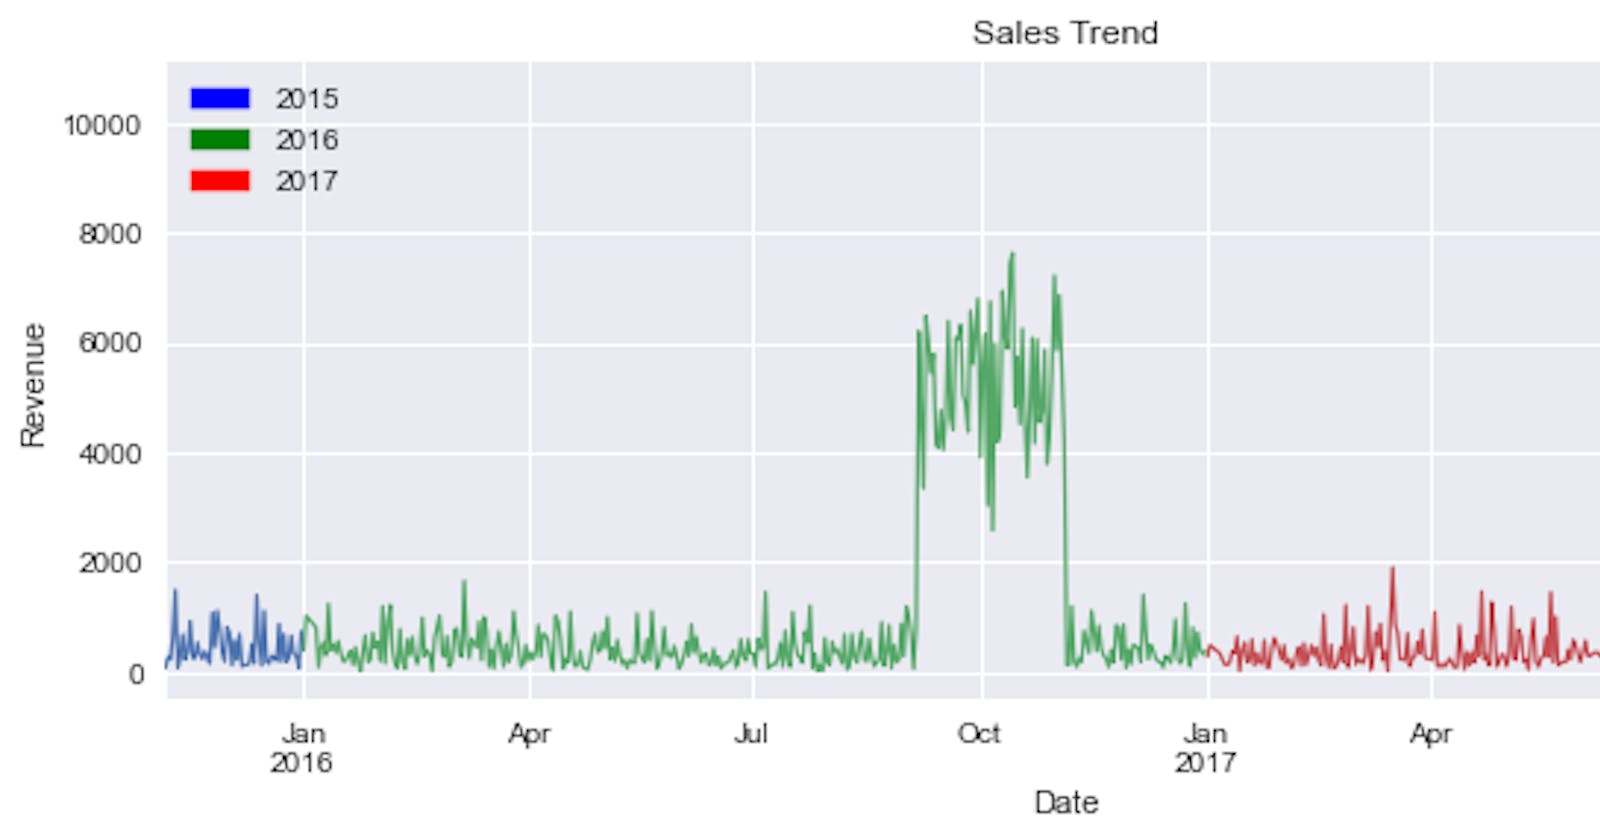 Sales Trend Analysis using Pandas 📈